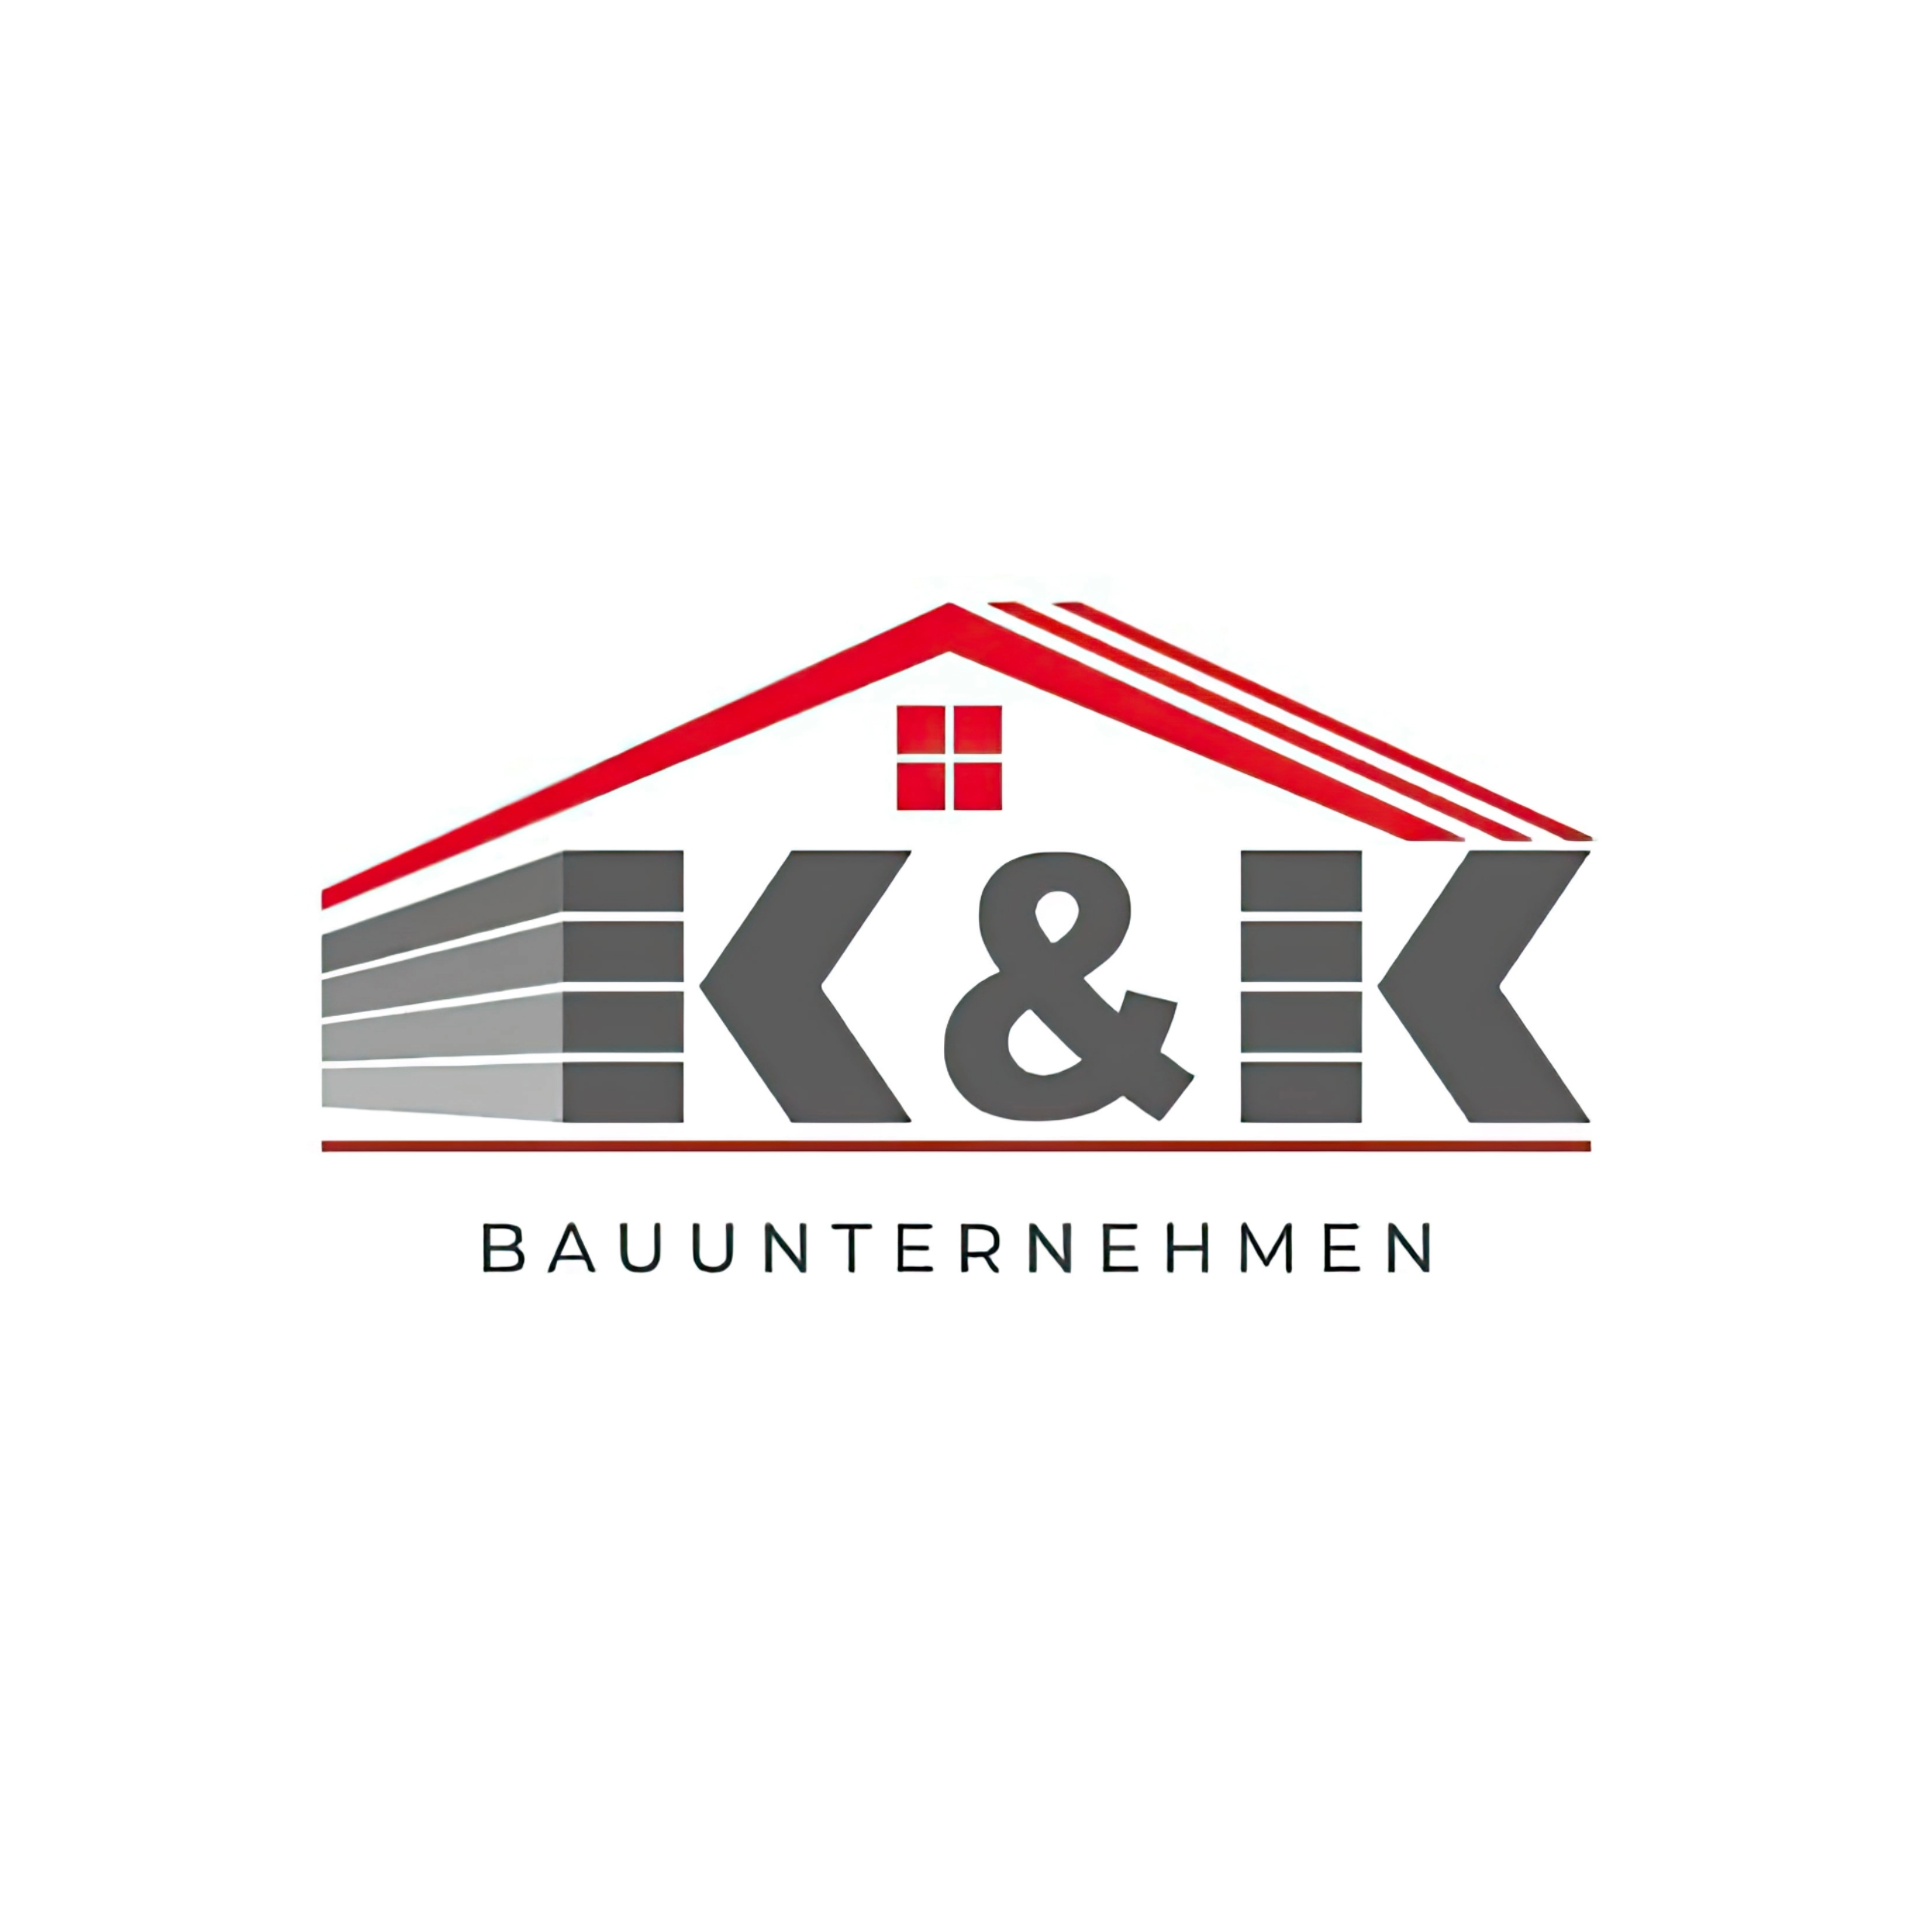 Die K&K Bau GbR ist auf verschiedene Bauarbeiten wie Beton-, Mauer-, Putz- und Malerarbeiten sowie Innendesign spezialisiert. LOGO K&K Bau